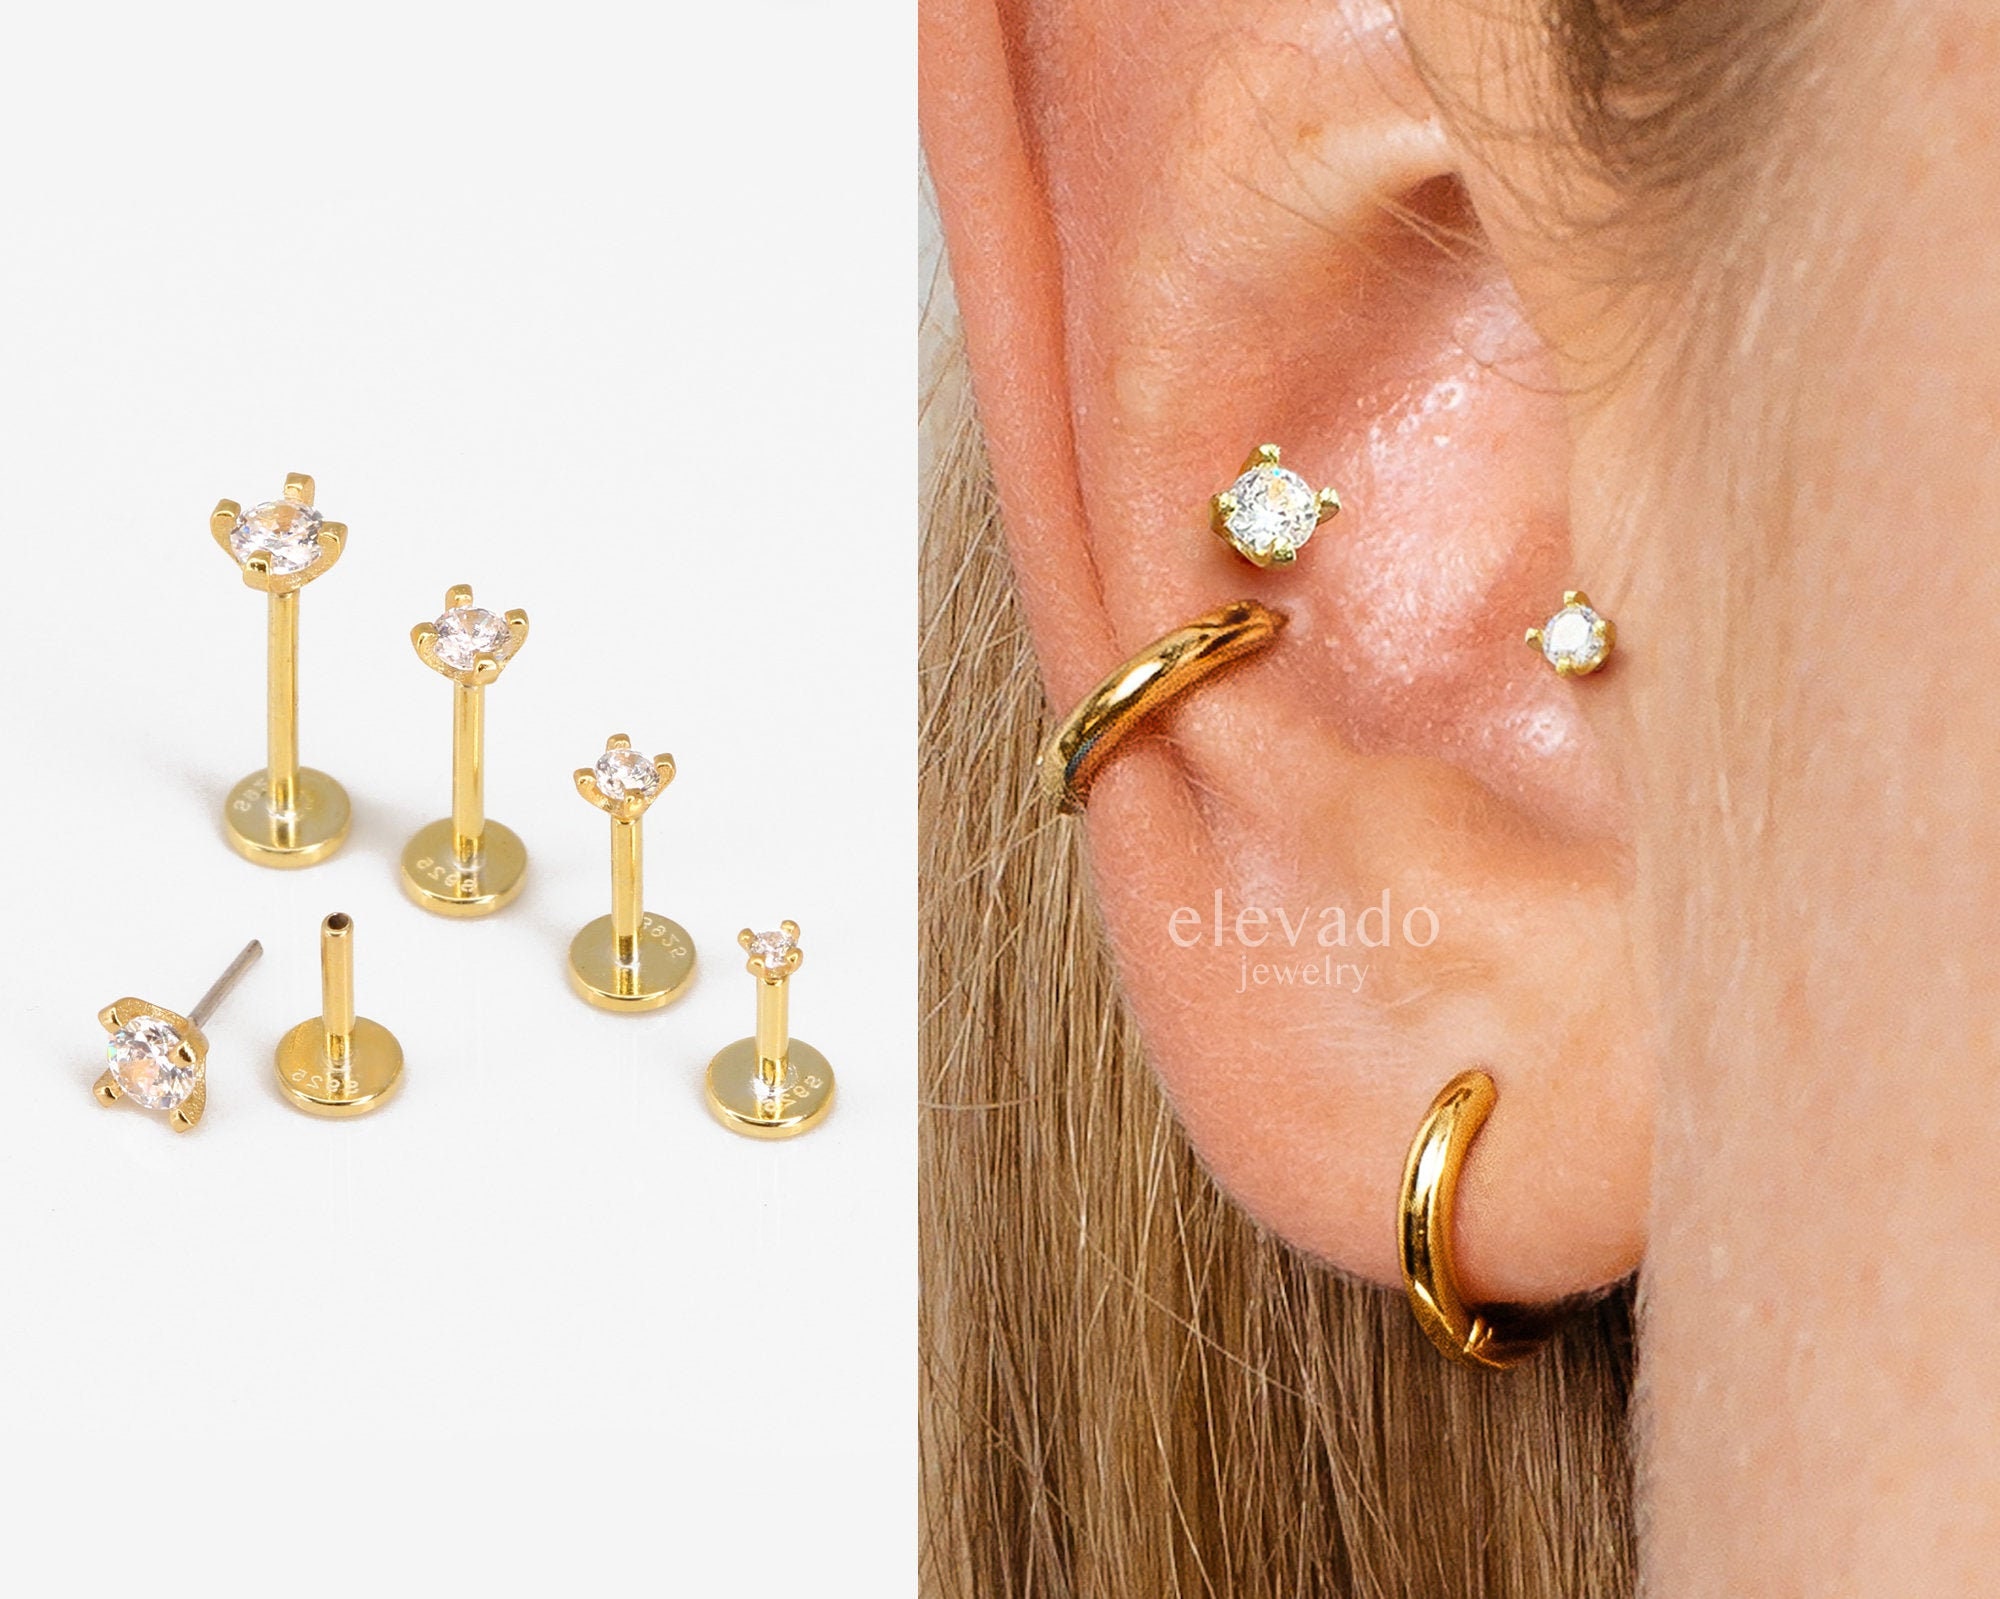 14K Gold Flat Back Studs Comfort Studs Sleep in Earrings Push in Flat Back  Ear Stack Multiple Piercings 18g Fine Body Jewelry 